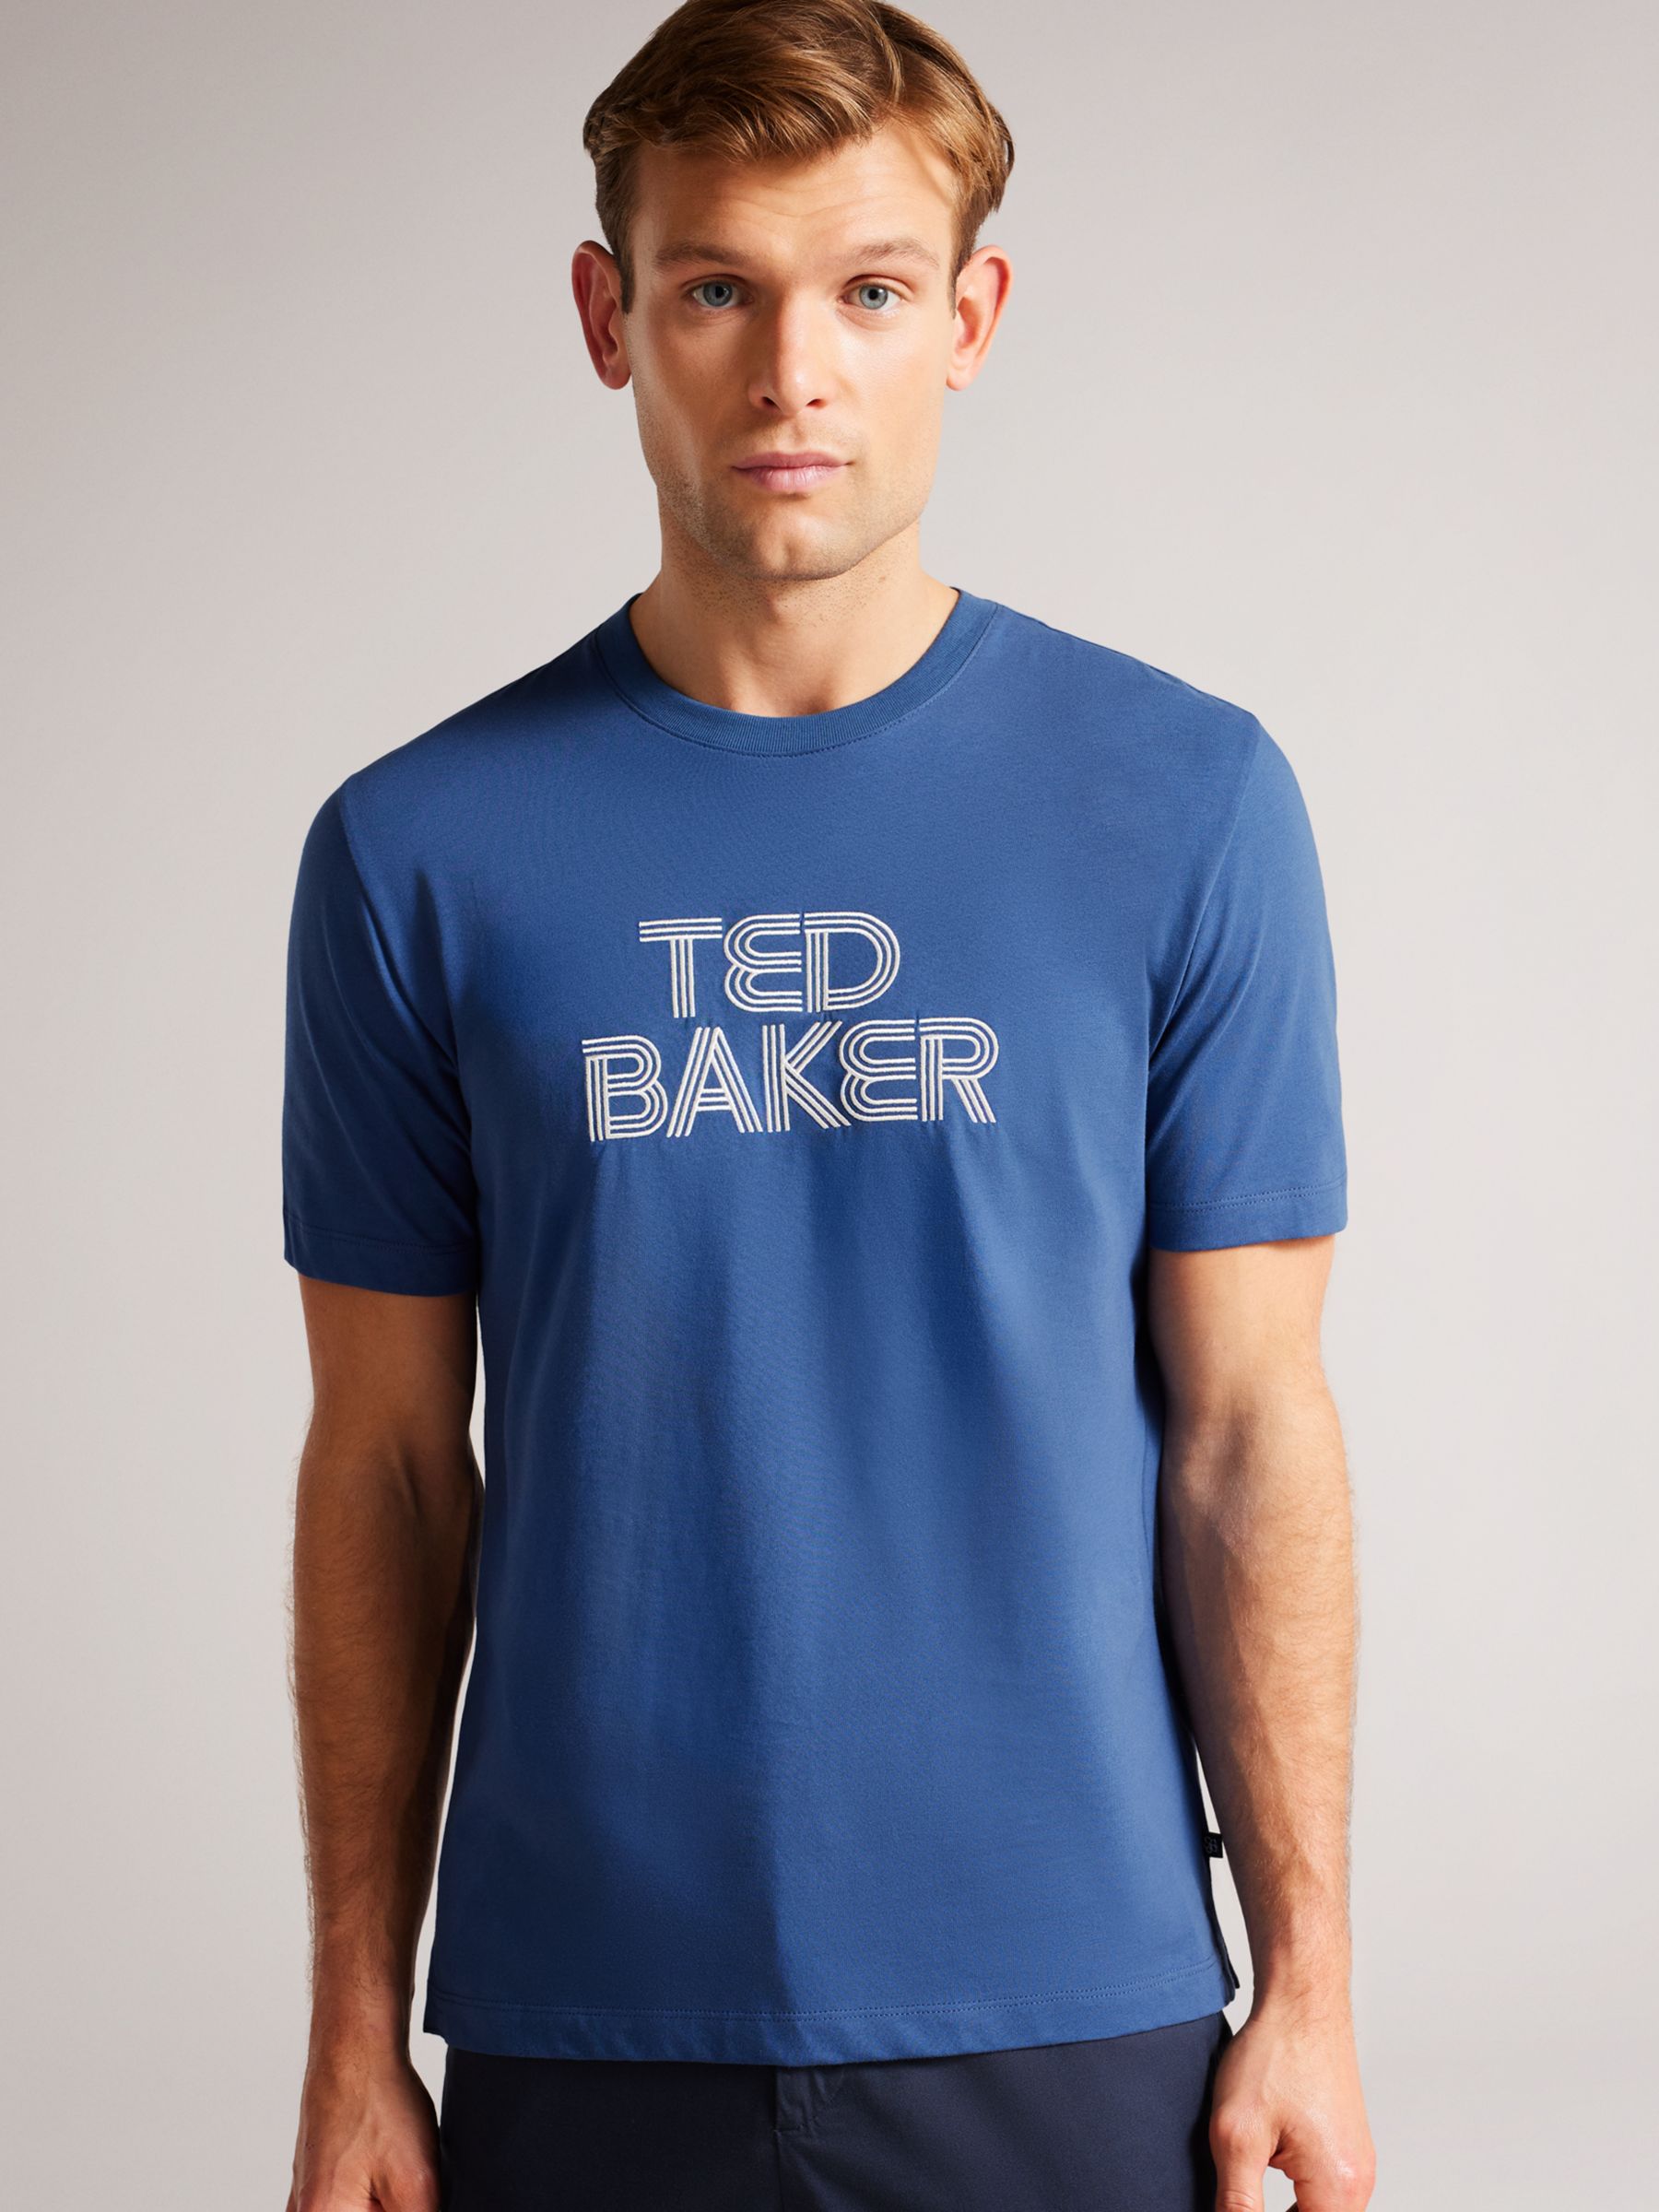 klog Hæderlig tilskuer Ted Baker Kenedy Logo T-Shirt, Dark Blue at John Lewis & Partners